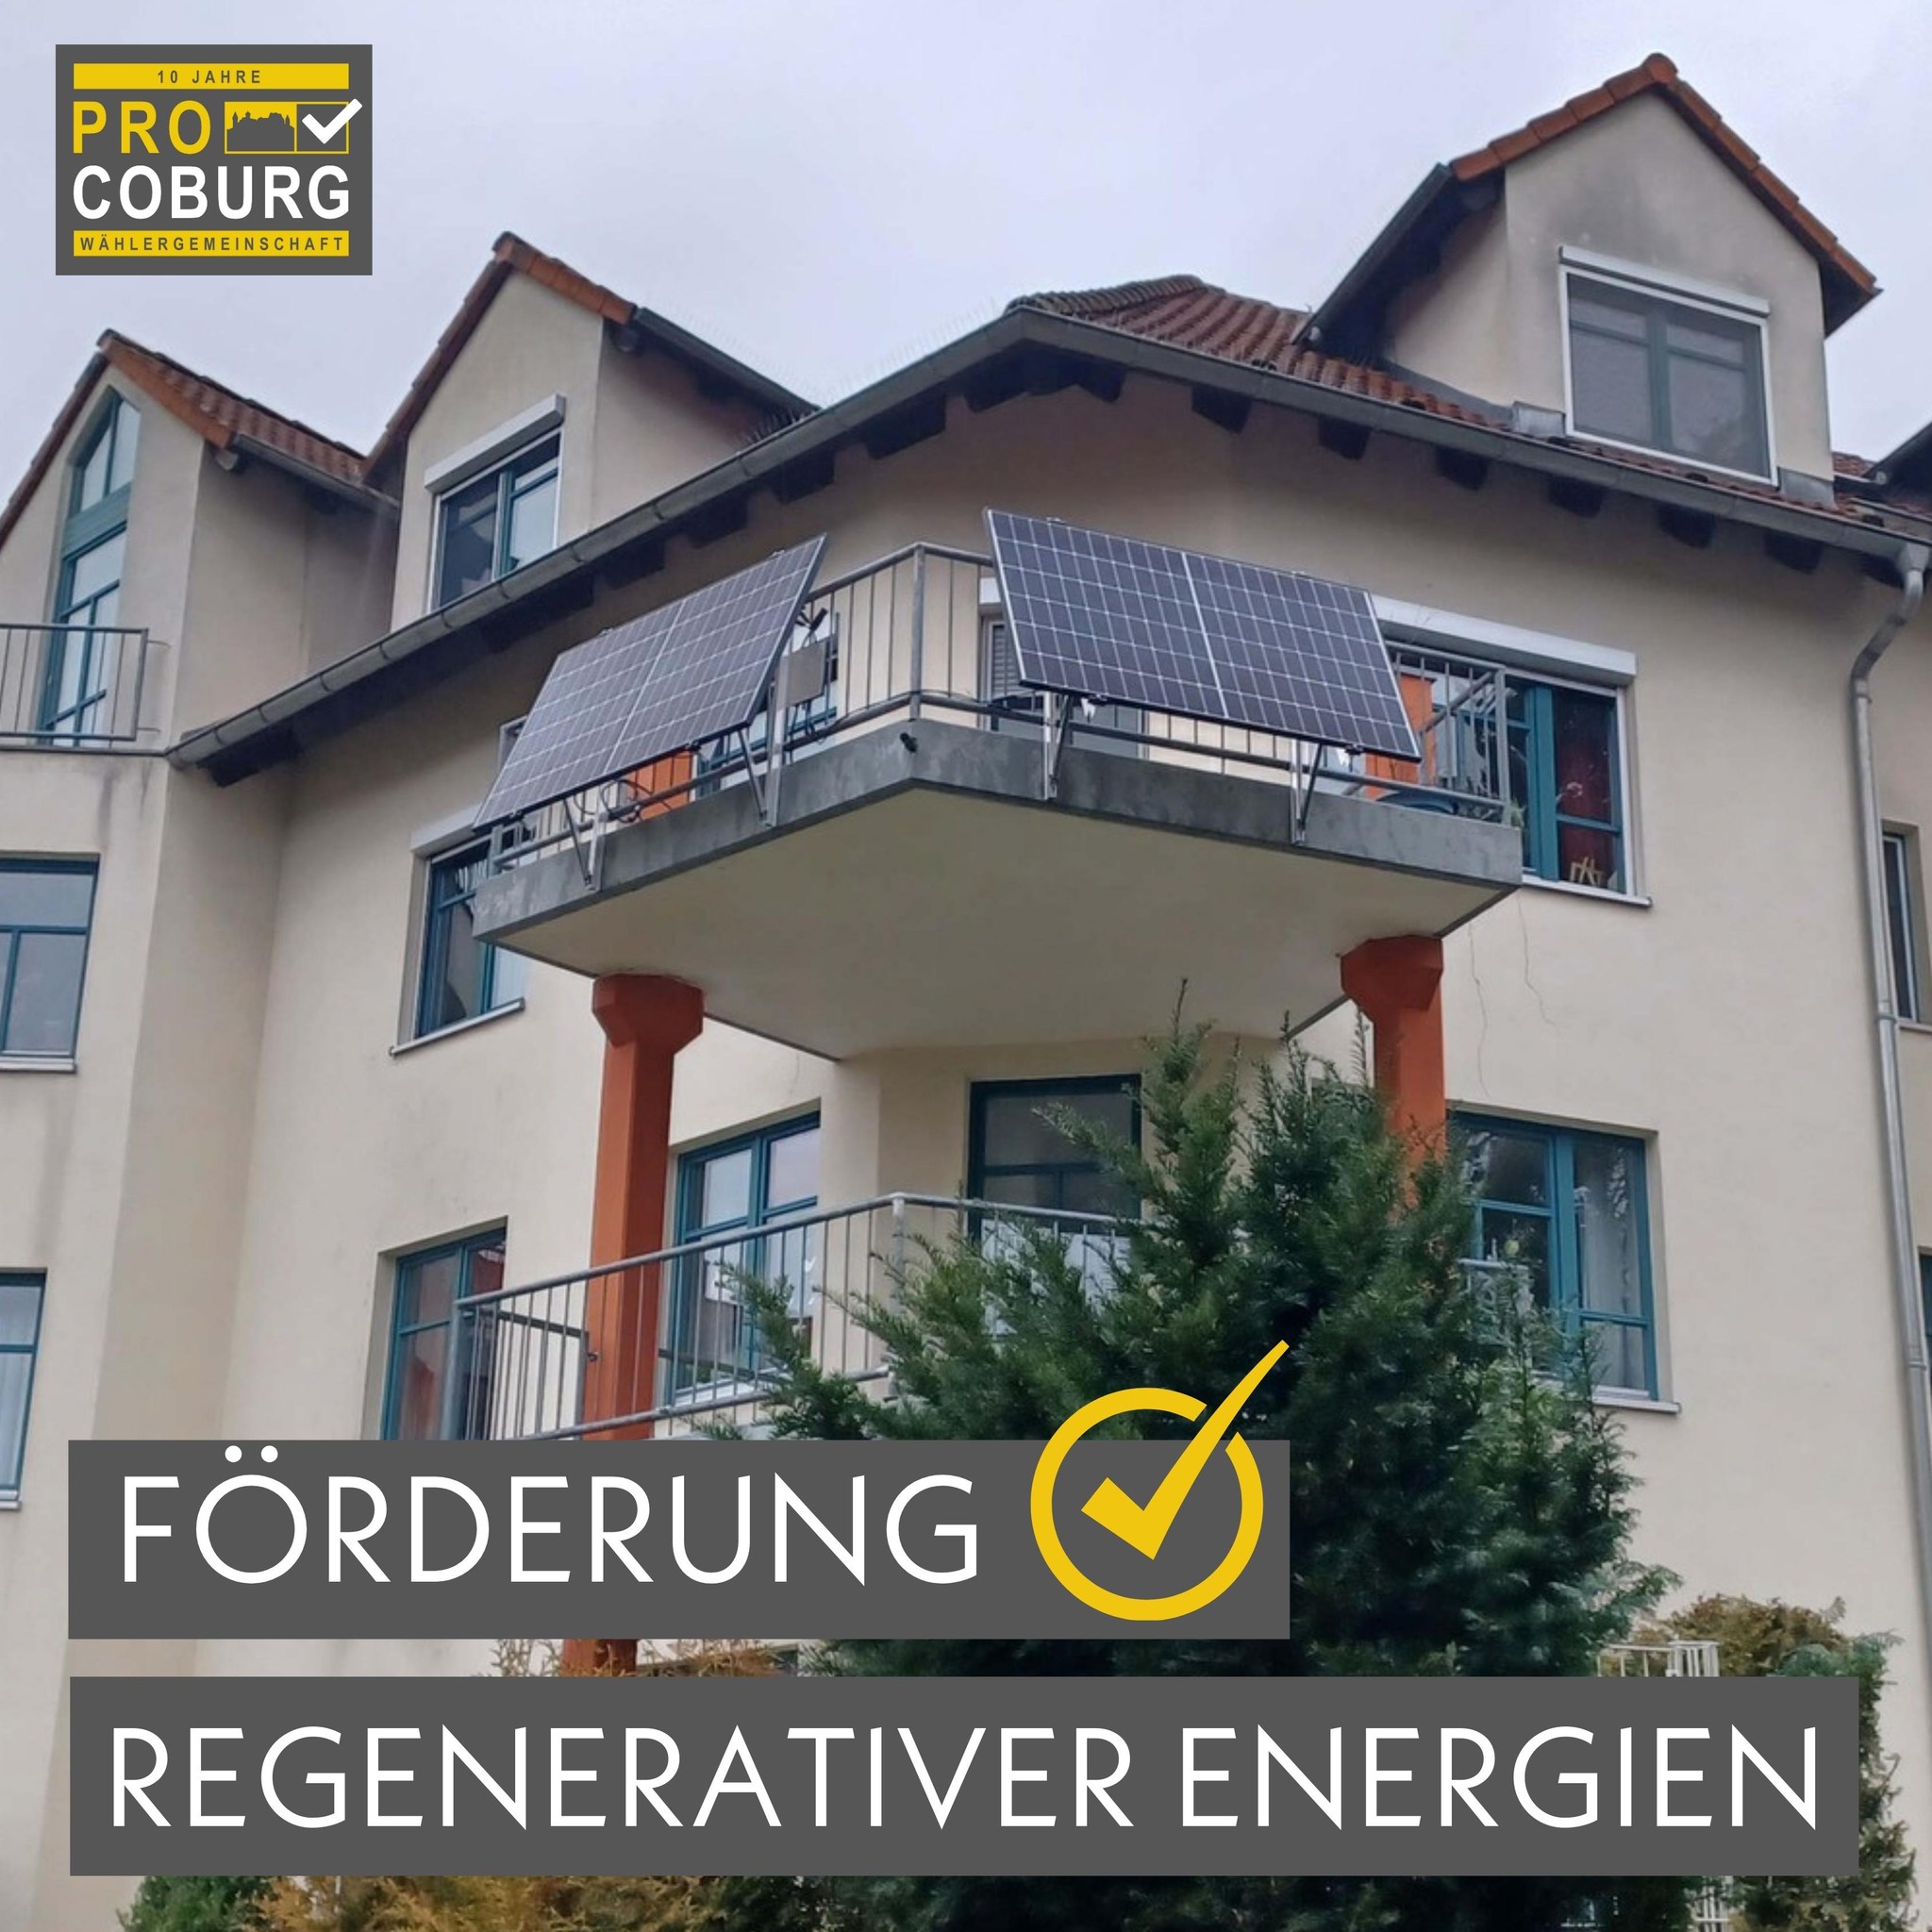 Förderung regenerativer Energien - Balkonkraftwerk PRO COBURG